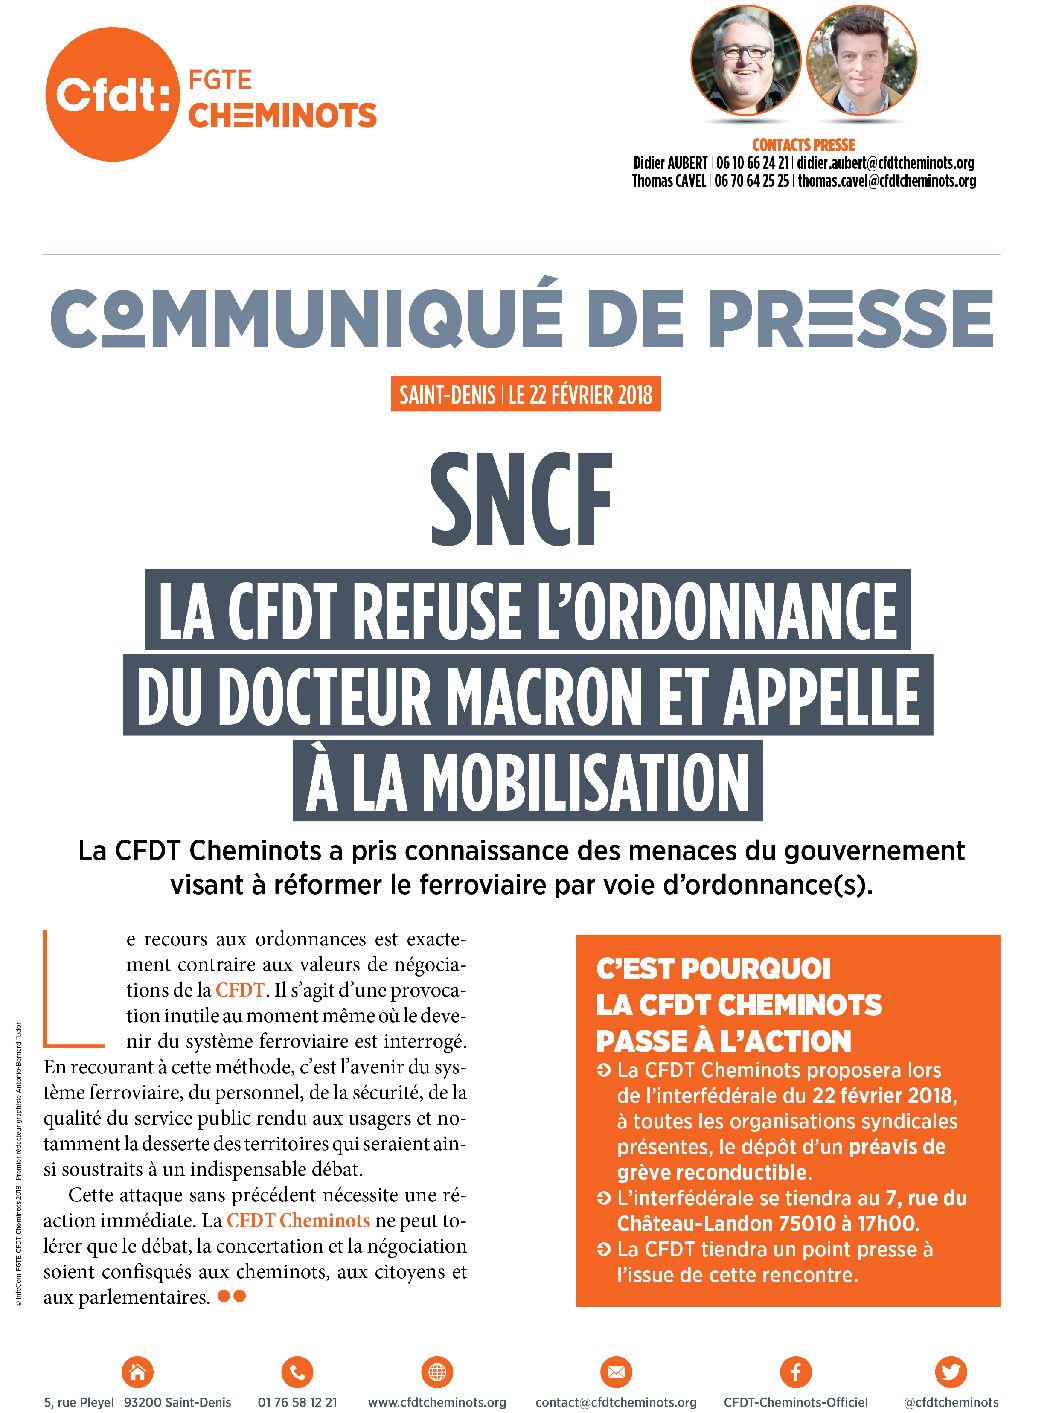 La CFDT refuse l’ordonnance du Docteur Macron et appelle à la mobilisation